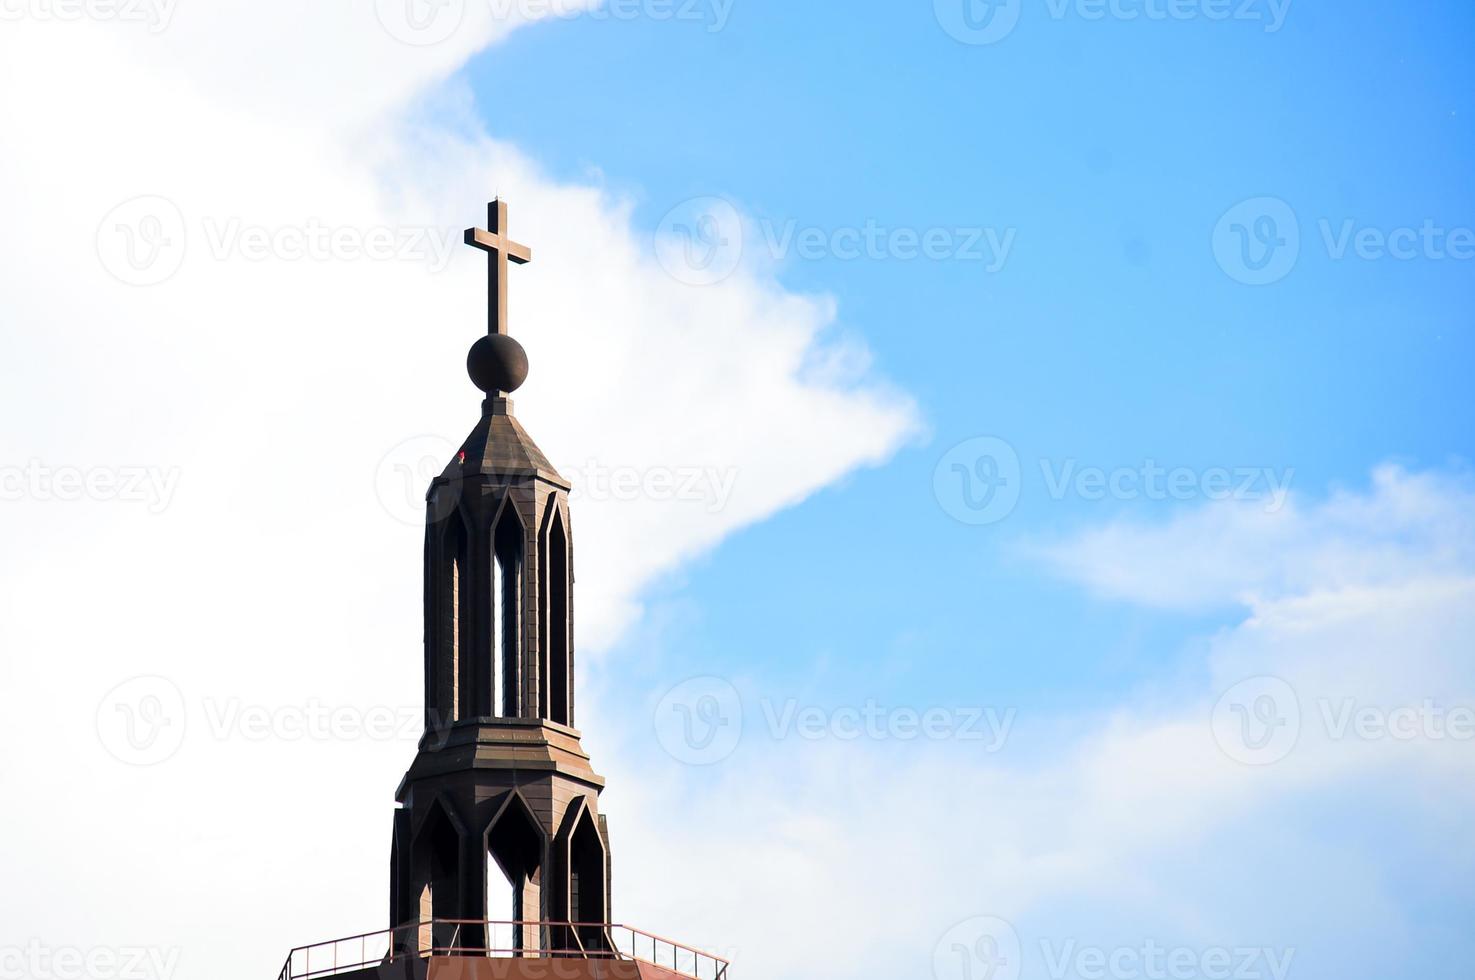 ein großes Kreuz auf einem schönen Gebäude foto